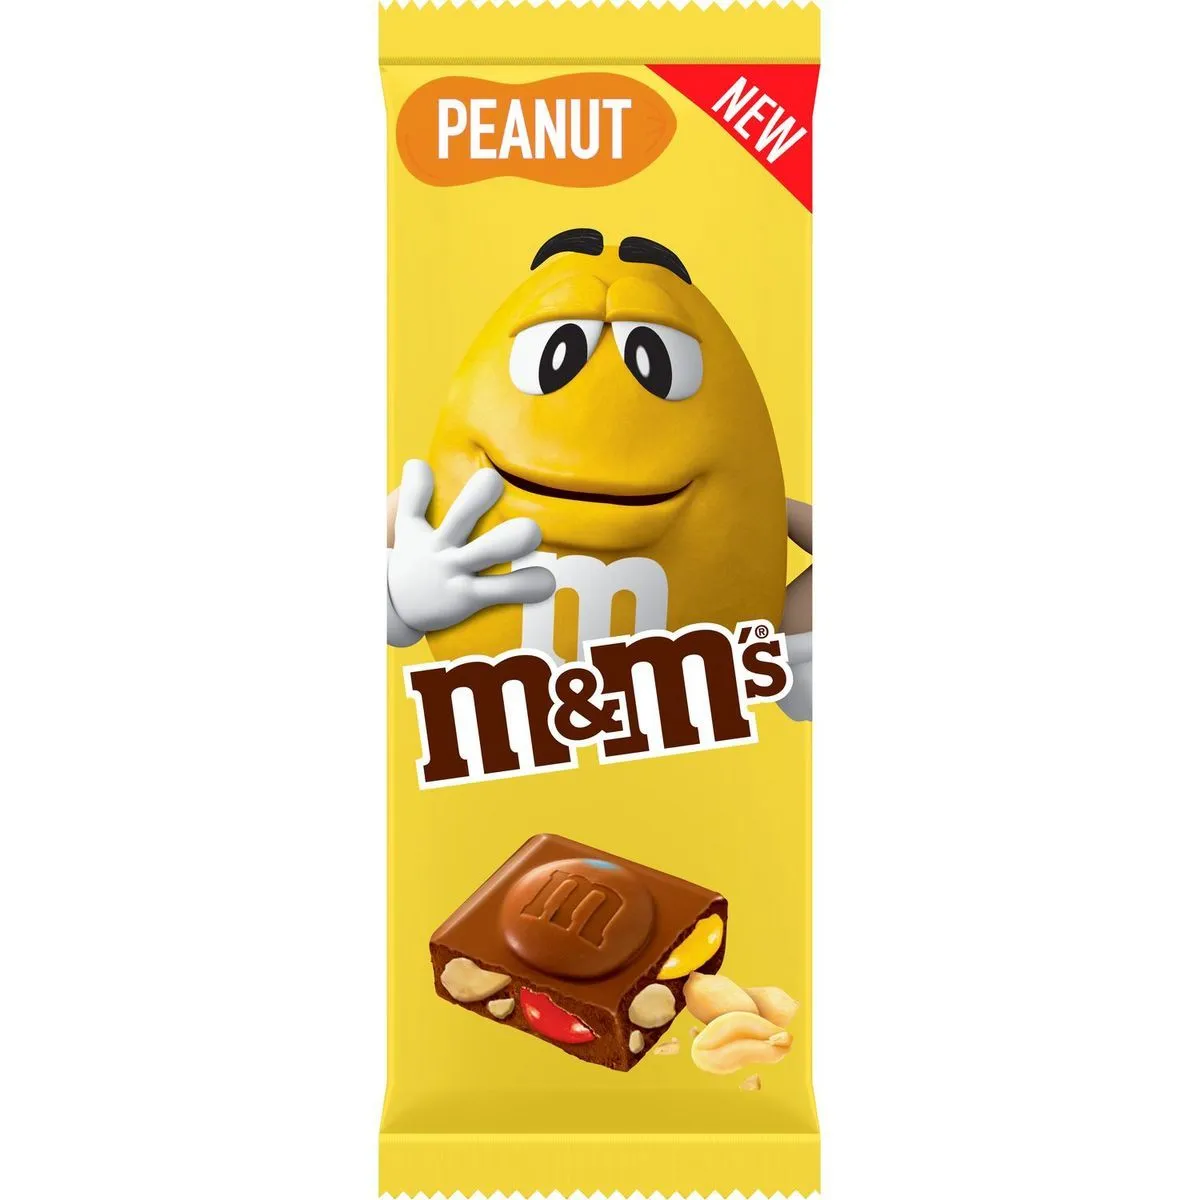 tablettes de chocolat peanut m&m's